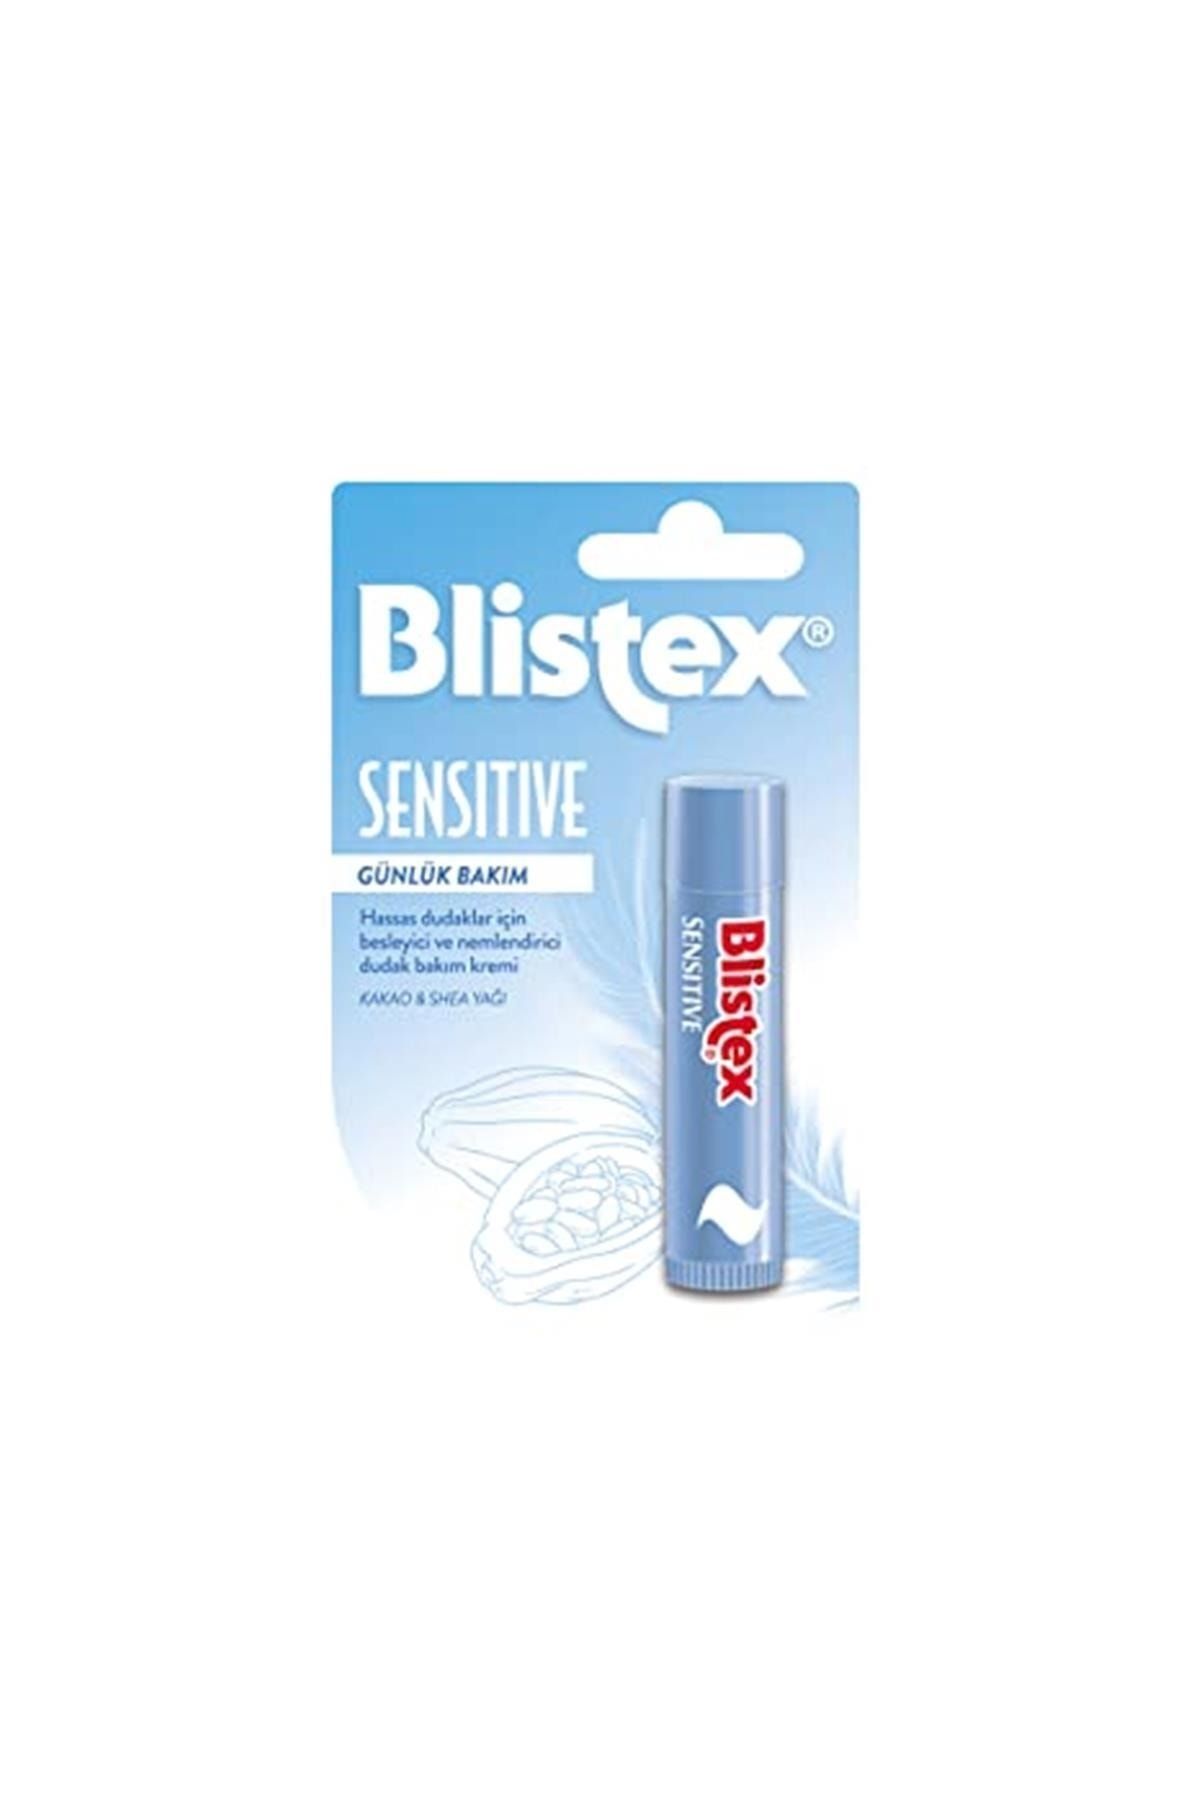 Blistex Sensitive - Hassas Dudaklar Için Besleyici Ve Nemlendirici Dudak Bakım Kremi 1 Paket